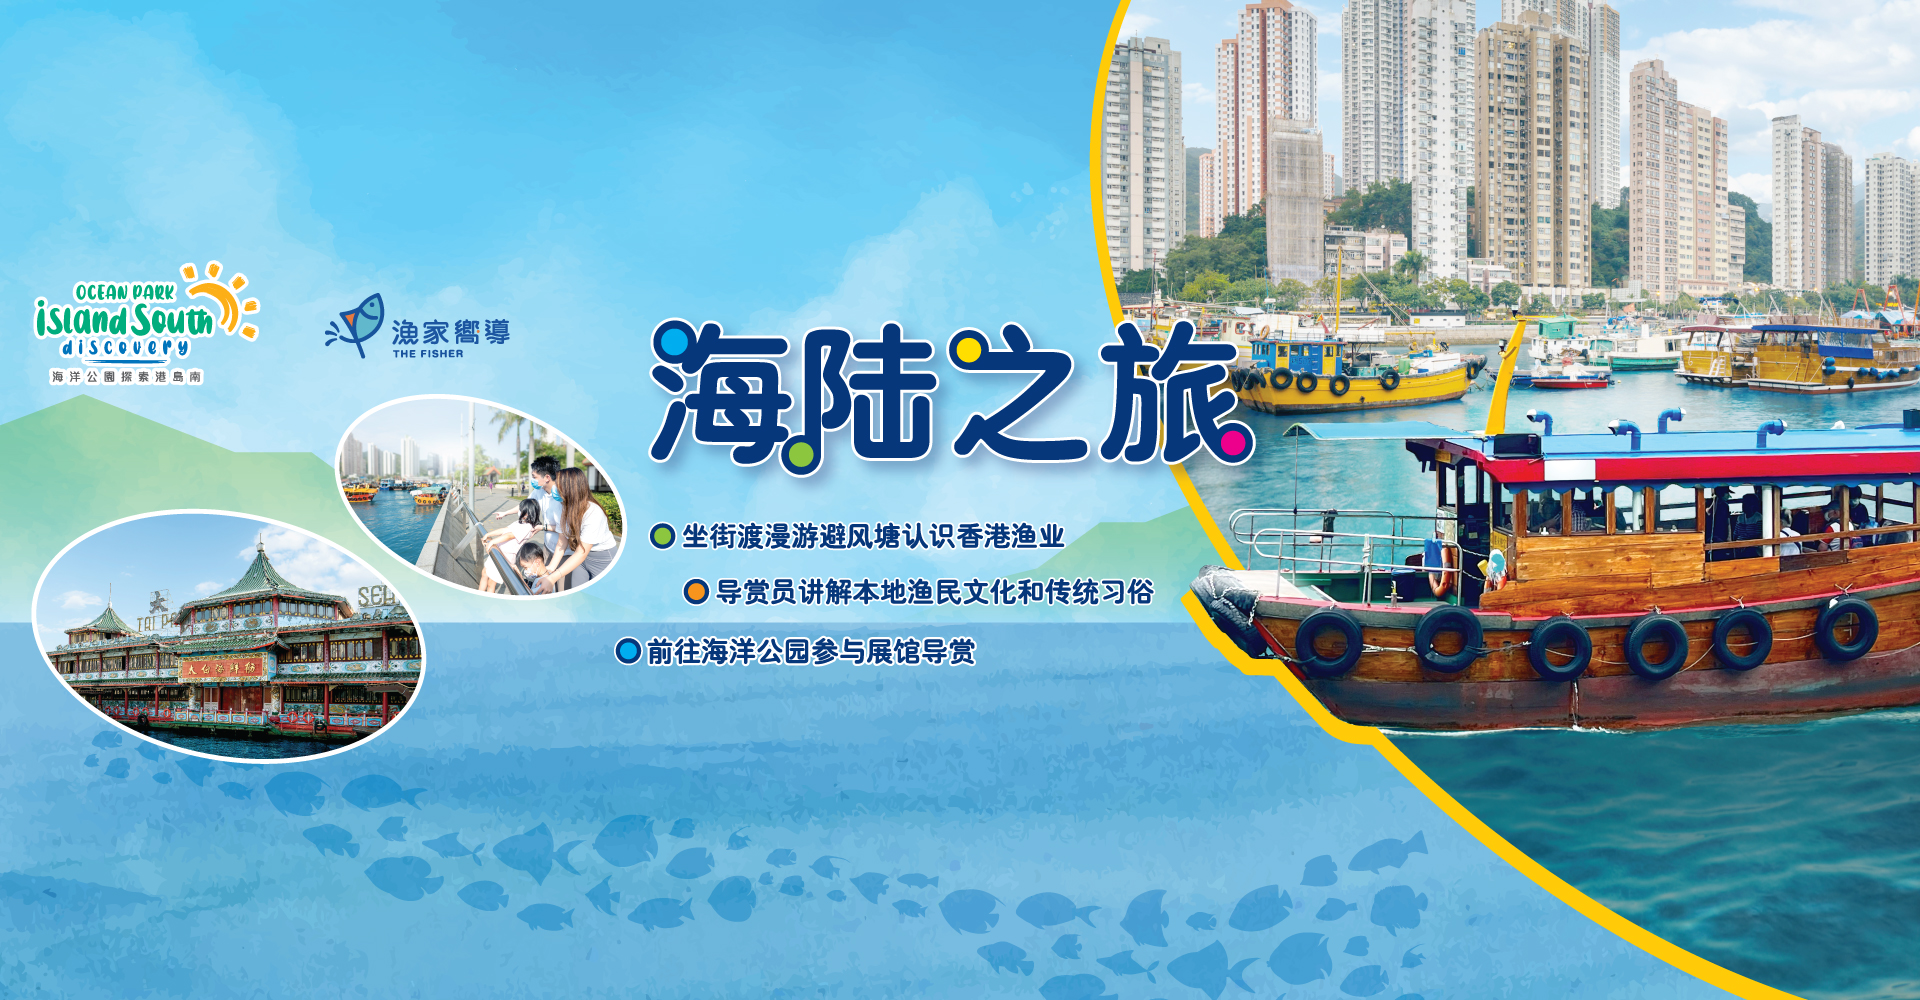 https://media.oceanpark.com.hk/files/s3fs-public/land-sea-guided-tour-innerpage-banner-desktop-sc.jpg